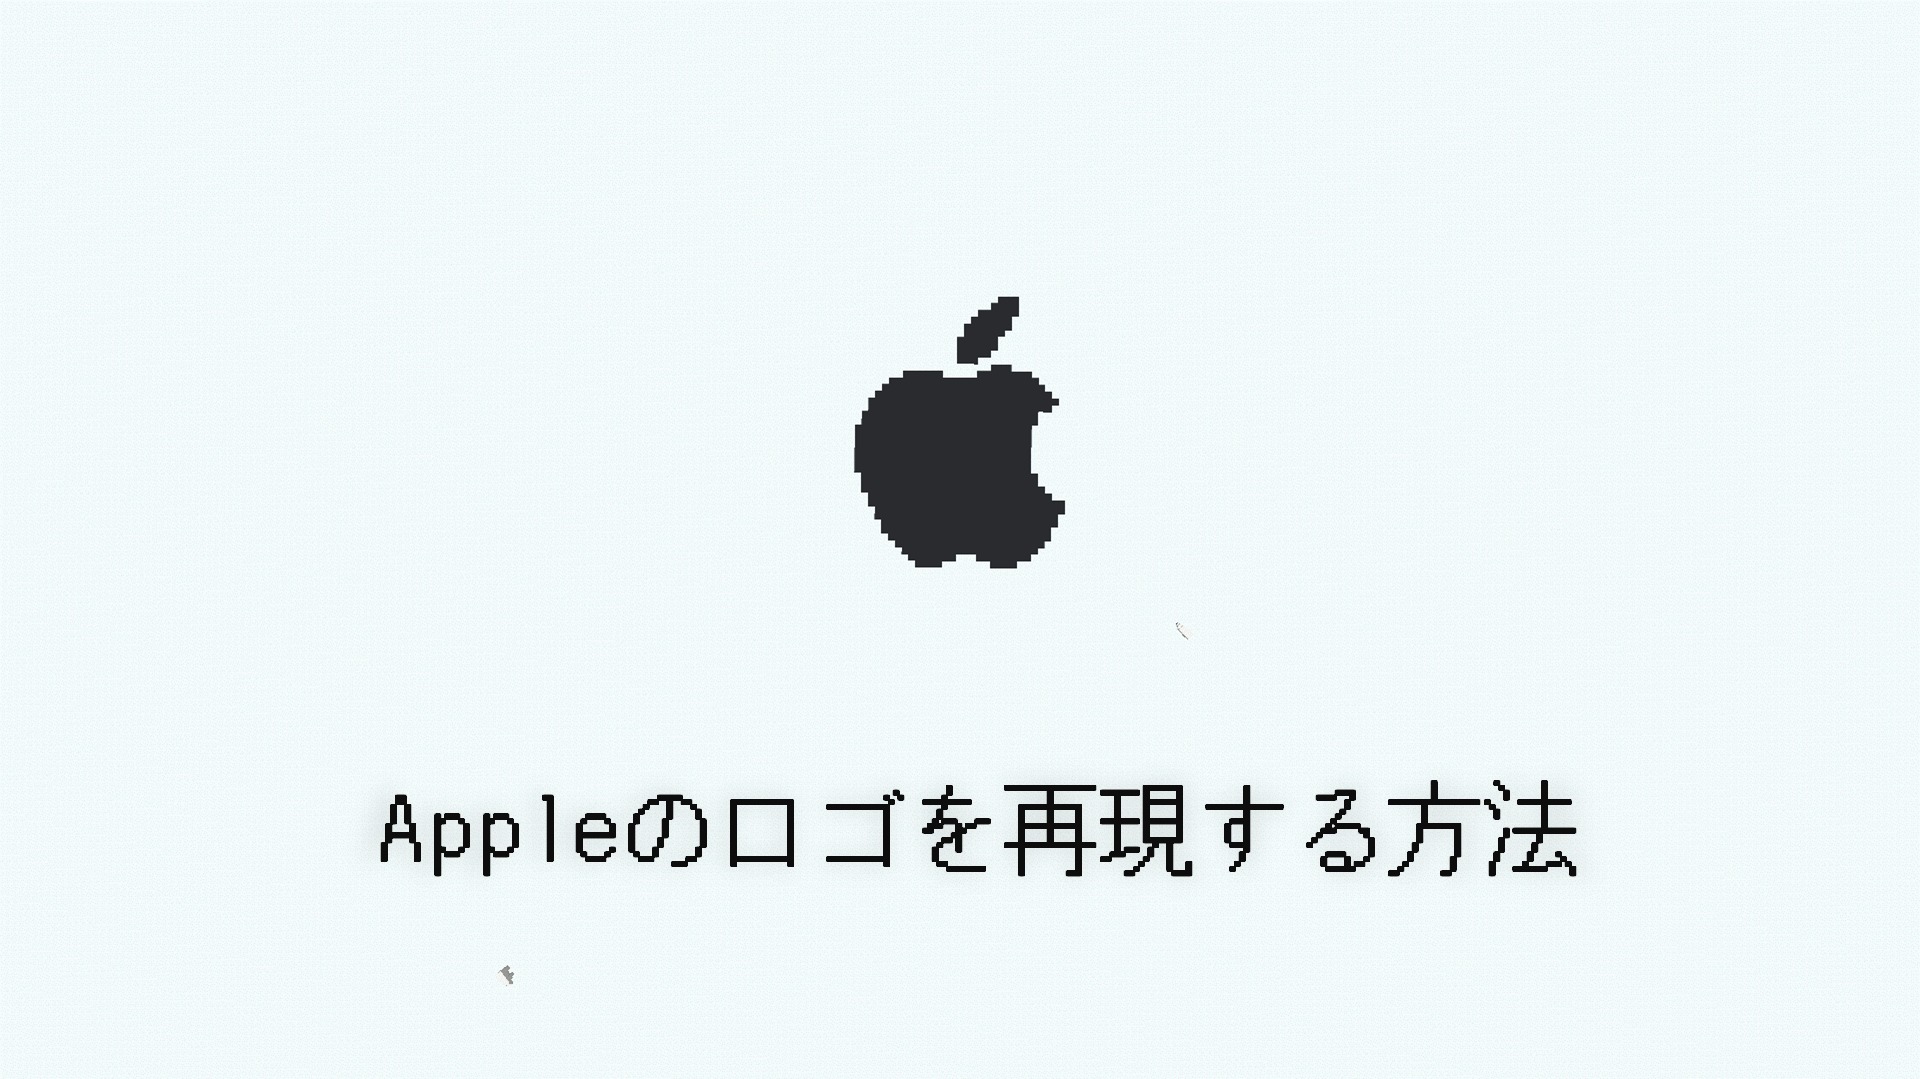 マイクラ Appleのロゴをブロックで再現する方法 Taiharuのマイクラ攻略